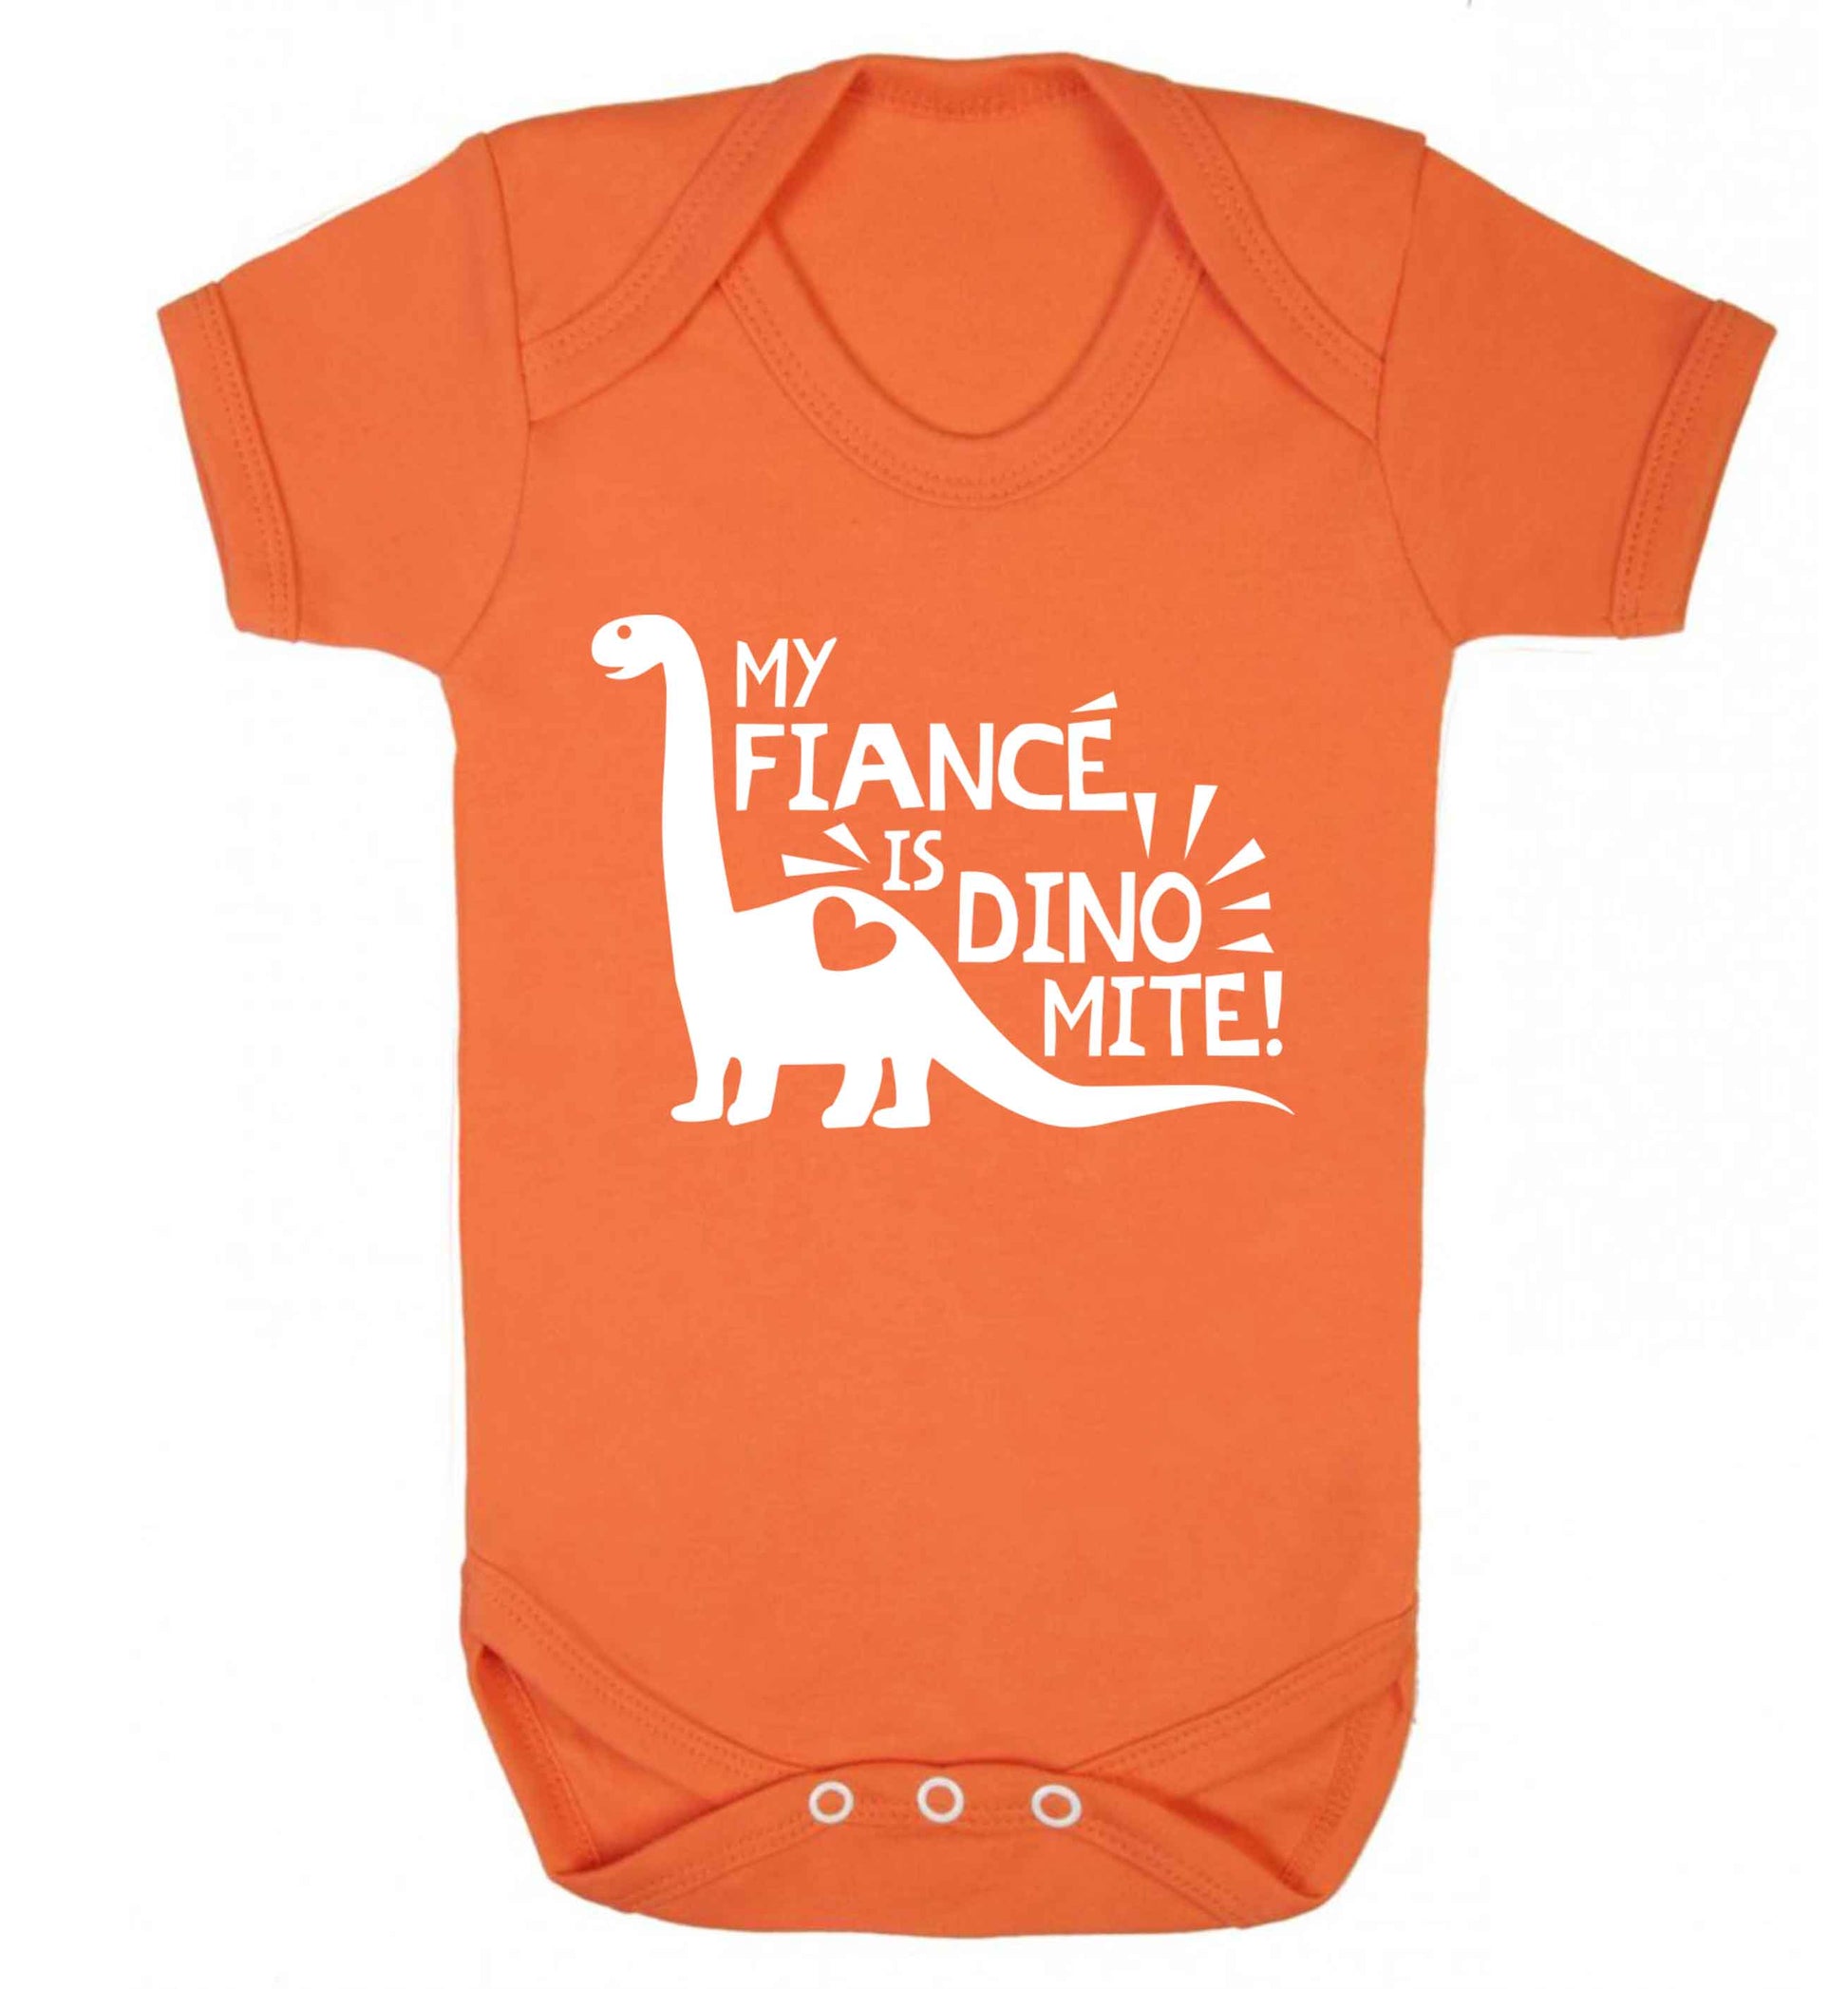 My fiance is dinomite! Baby Vest orange 18-24 months